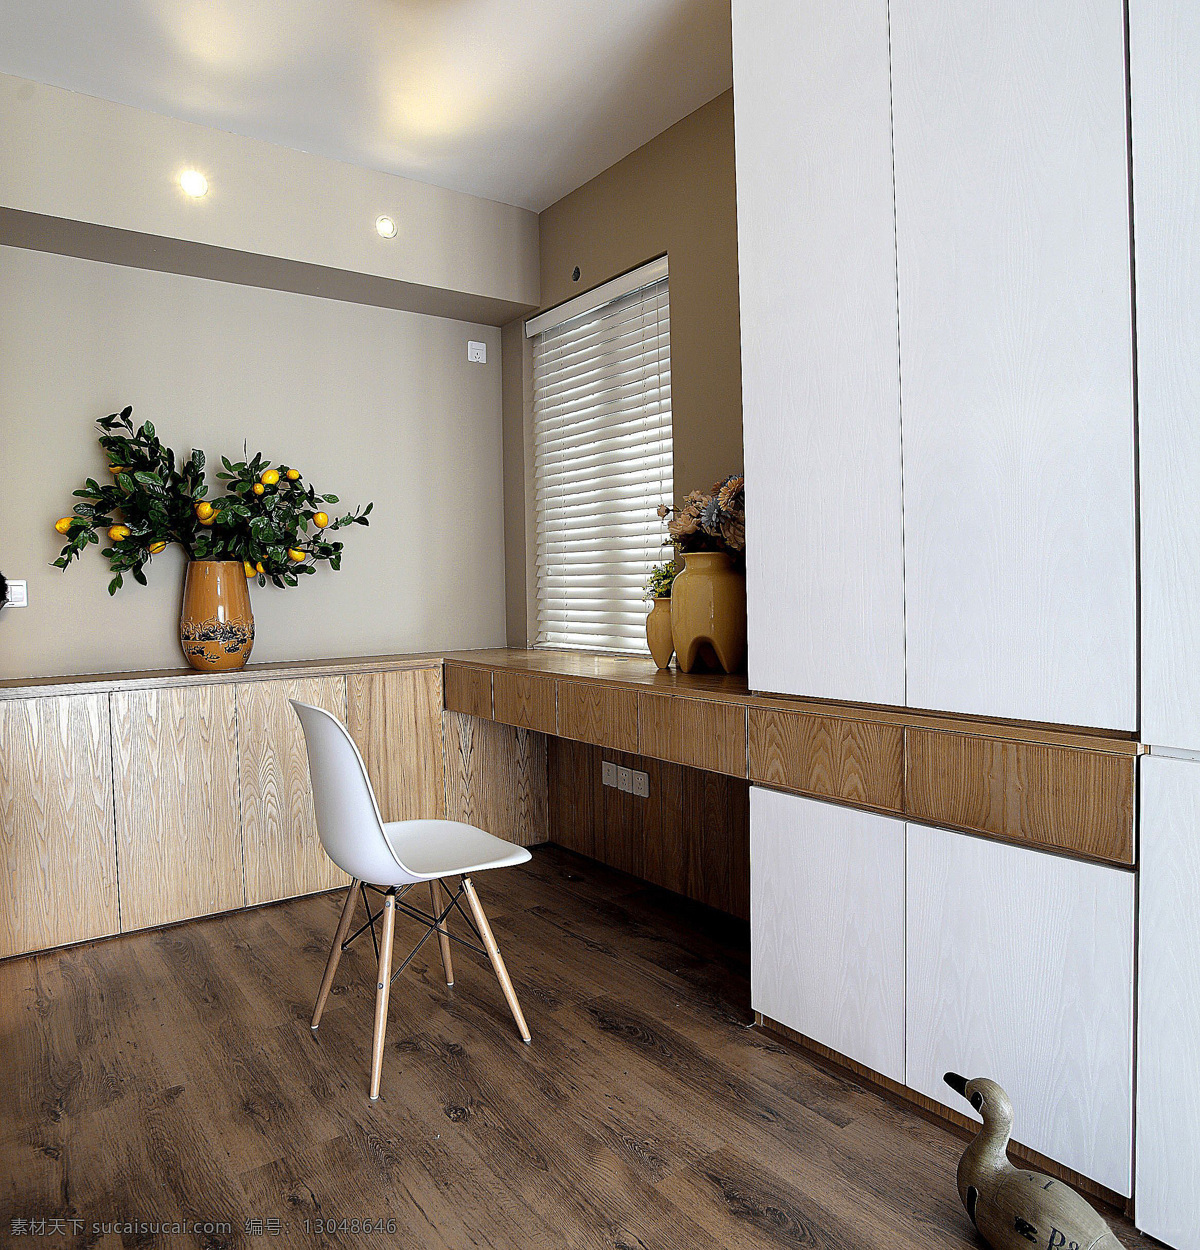 现代 时尚 卧室 白色 衣柜 室内装修 效果图 白色柜子 白色椅子 木地板 木制书桌 卧室装修